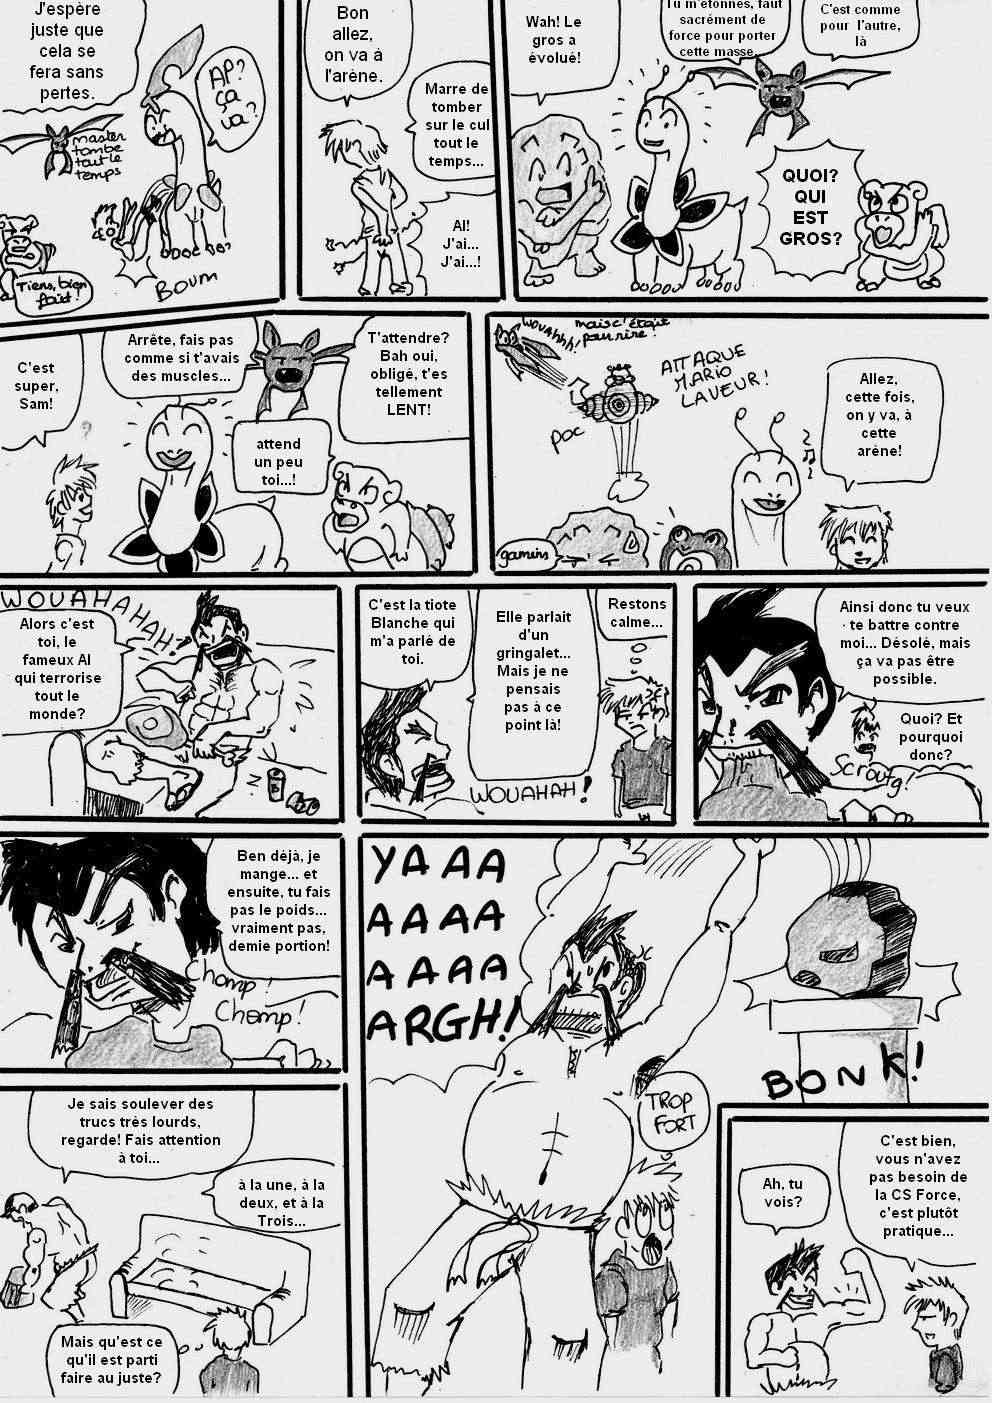 [Argent] shewolf's comic nuz - Page 19 Planch16